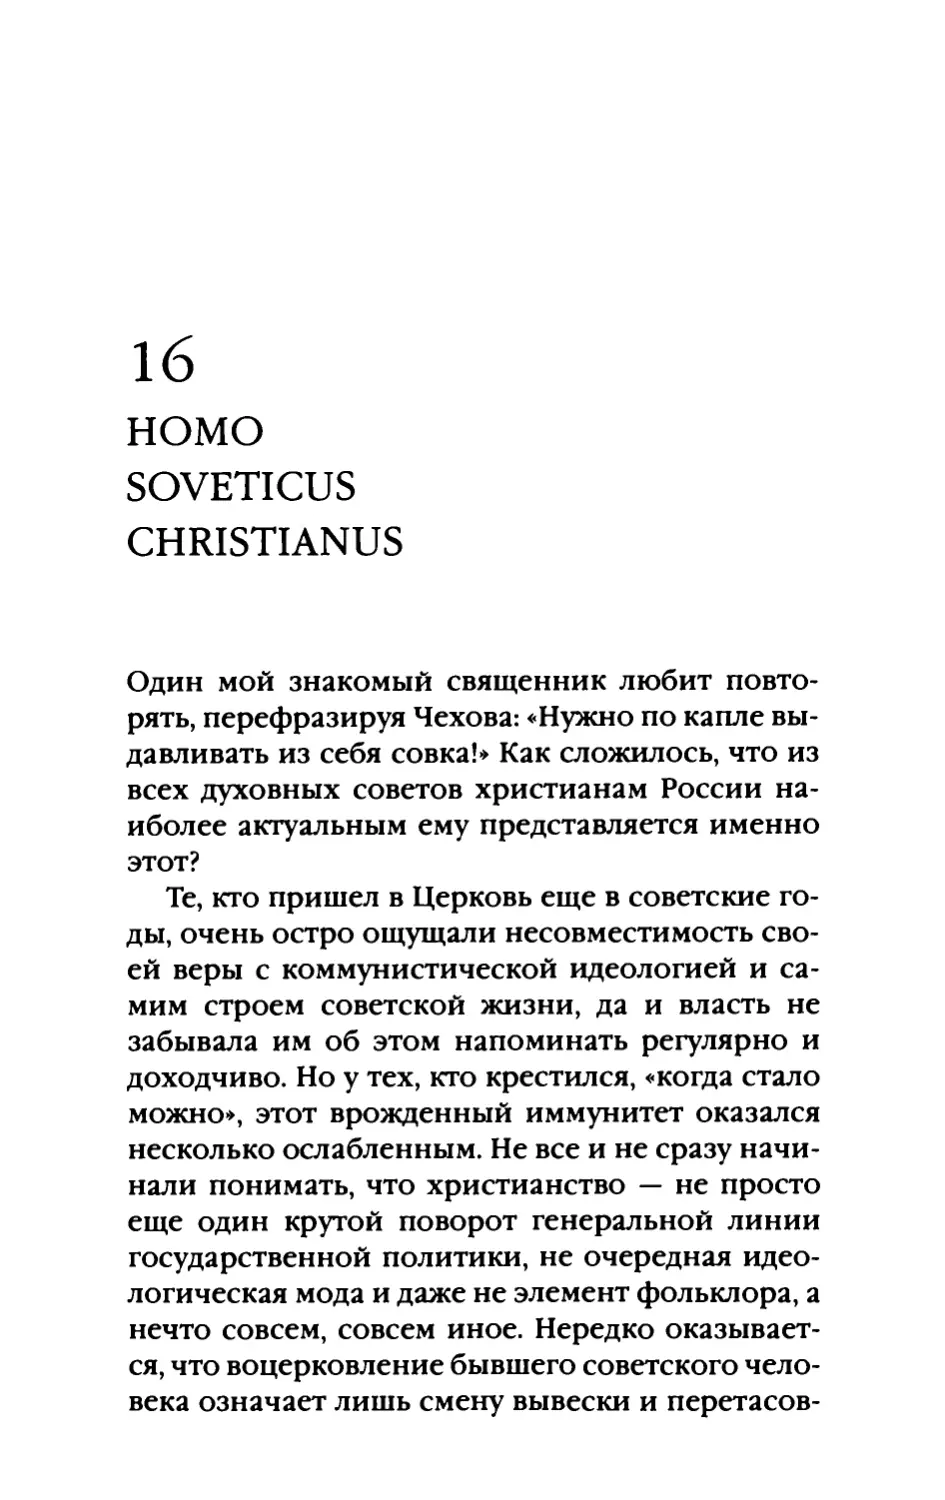 16. Homo soveticus christianus